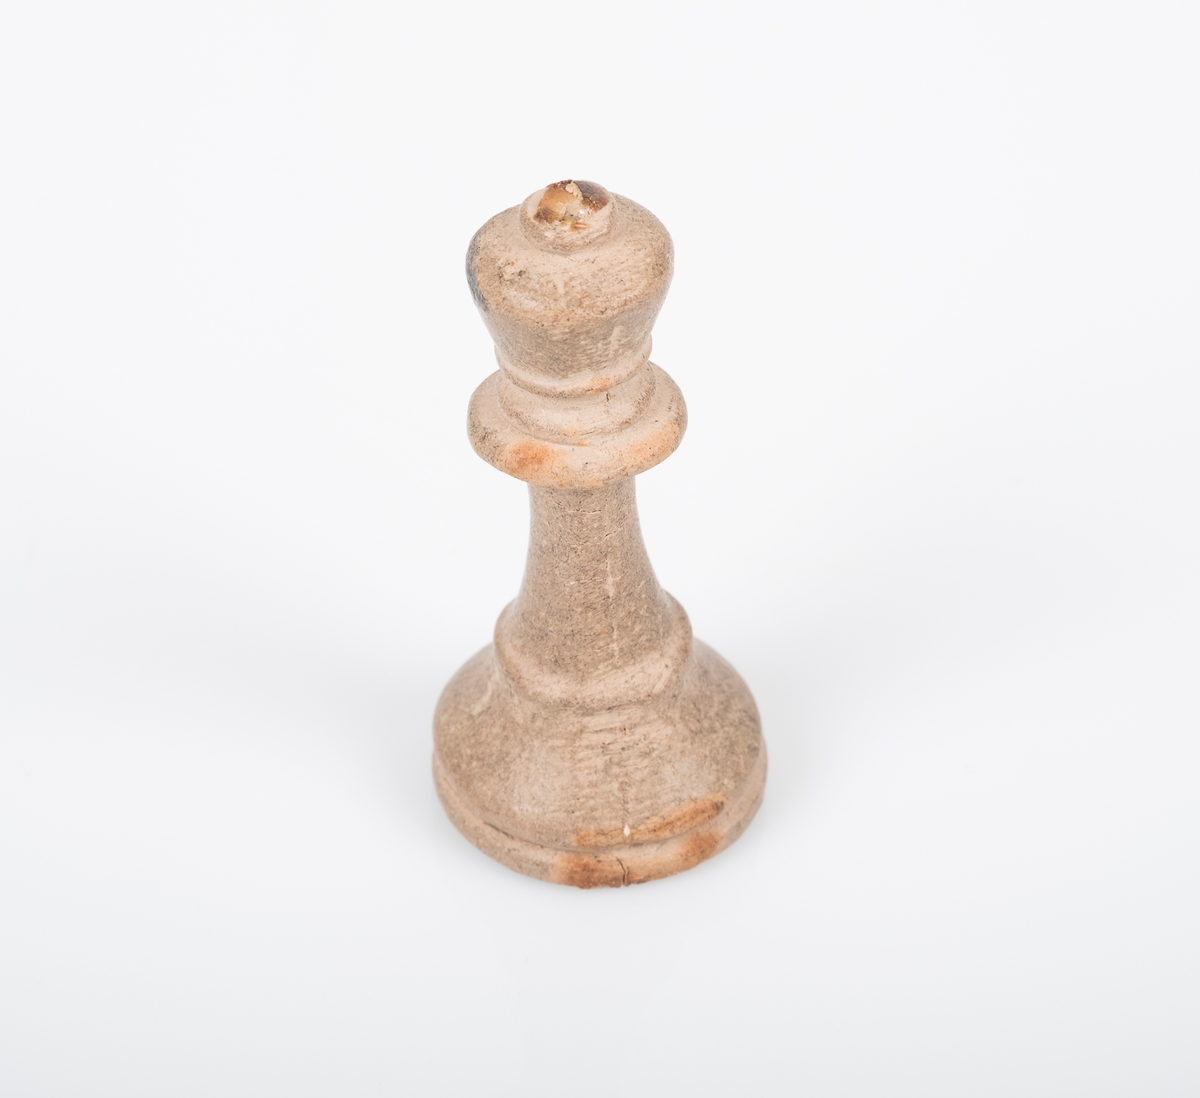 Sjakkbrikken (dronning) er laget av tre, og er malt hvit/grå. Det ser ut som den har blitt grå ved bruk. Lim på toppen av krona som tyder på at det har vært festet noe der, trolig et kors. Et lite hull på undersiden som er fylt med noe rosa.